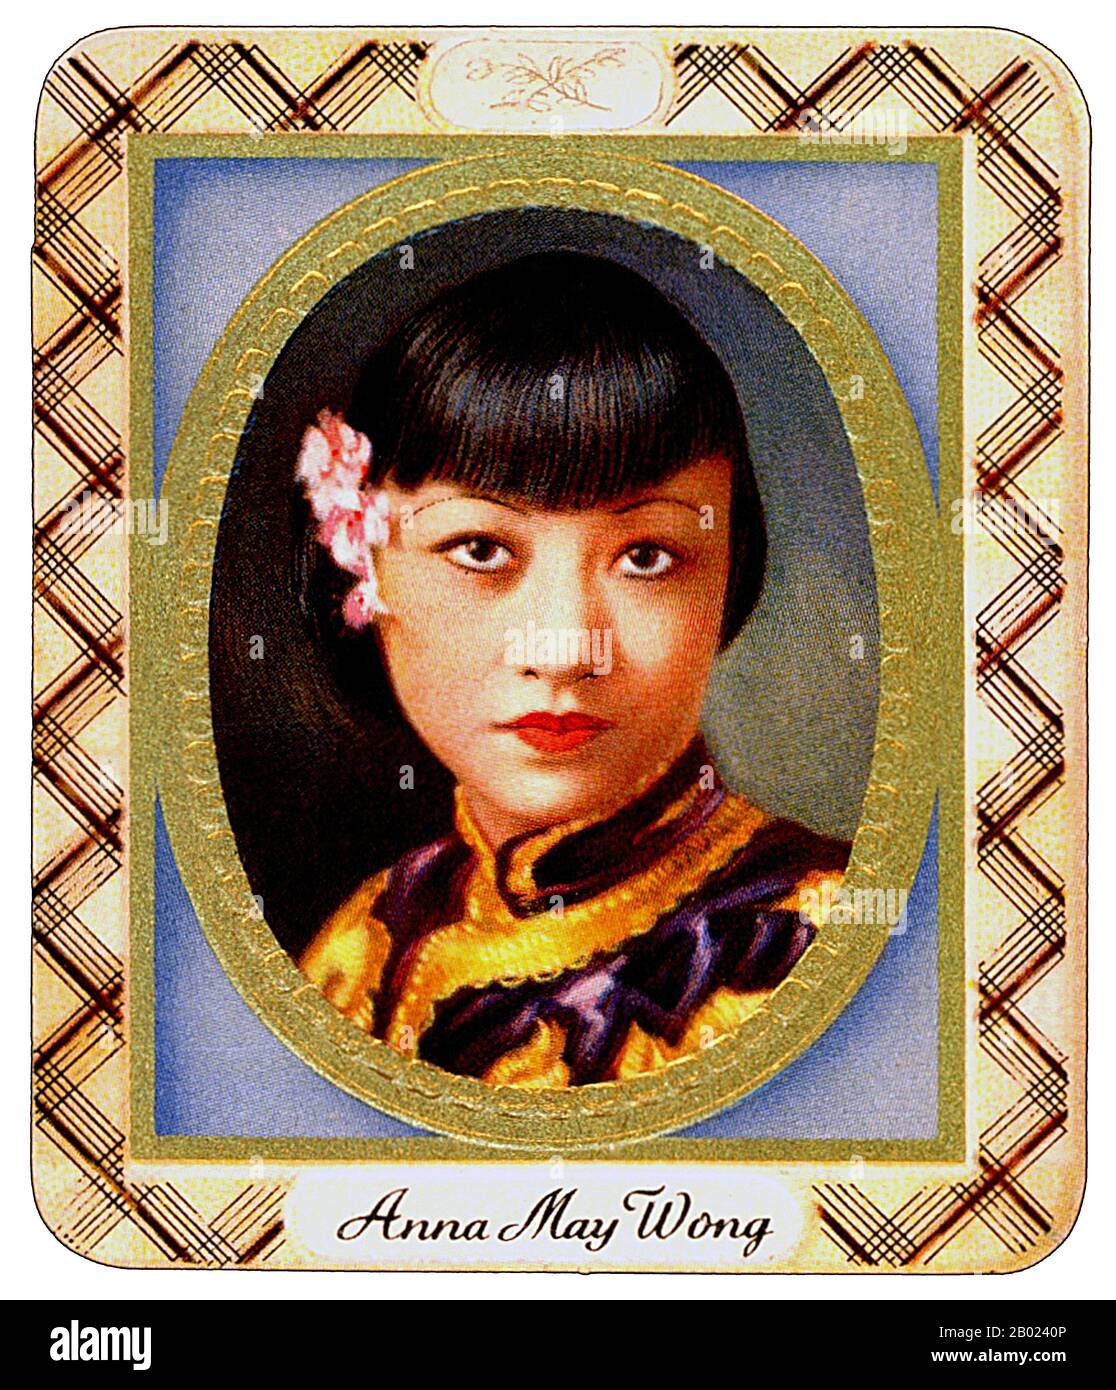 Anna May Wong (* 3. Januar 1905 in New York; † 3. Februar 1961) war eine US-amerikanische Schauspielerin, der erste Chinesisch-amerikanische Filmstar und die erste Asian Amerikanerin, die zu einem internationalen Star wurde. Ihre lange und abwechslungsreiche Karriere umfasste sowohl Stummfilm als auch Tonfilm, Fernsehen, Bühne und Radio. In der Nähe des Chinatown-Viertels von Los Angeles zu Chinesisch-amerikanischen Eltern der zweiten Generation geboren, wurde Wong mit den Filmen infatuiert und begann schon früh in Filmen zu spielen. Während der Stummfilmzeit agierte sie in Der toll of the Sea (1922), einem der ersten Filme in Farbe und Douglas Fairbanks' The Thief of Bagda Stockfoto